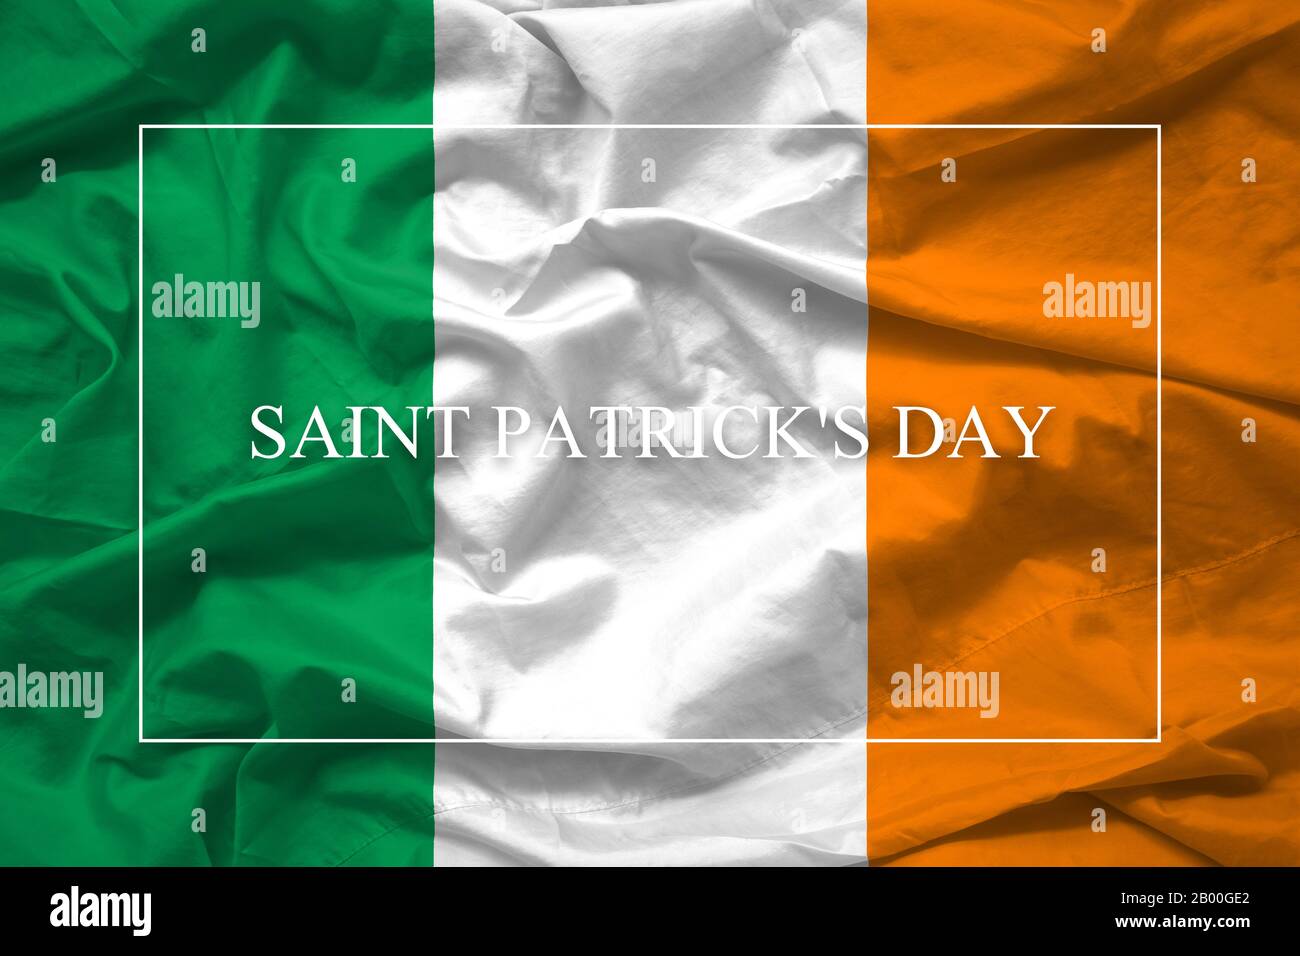 Einfach Fröhlicher Logotyp des Saint Patrick'S Day auf dem Hintergrund der irischen Flagge für das Design der Veranstaltung zur irischen Feier Stockfoto